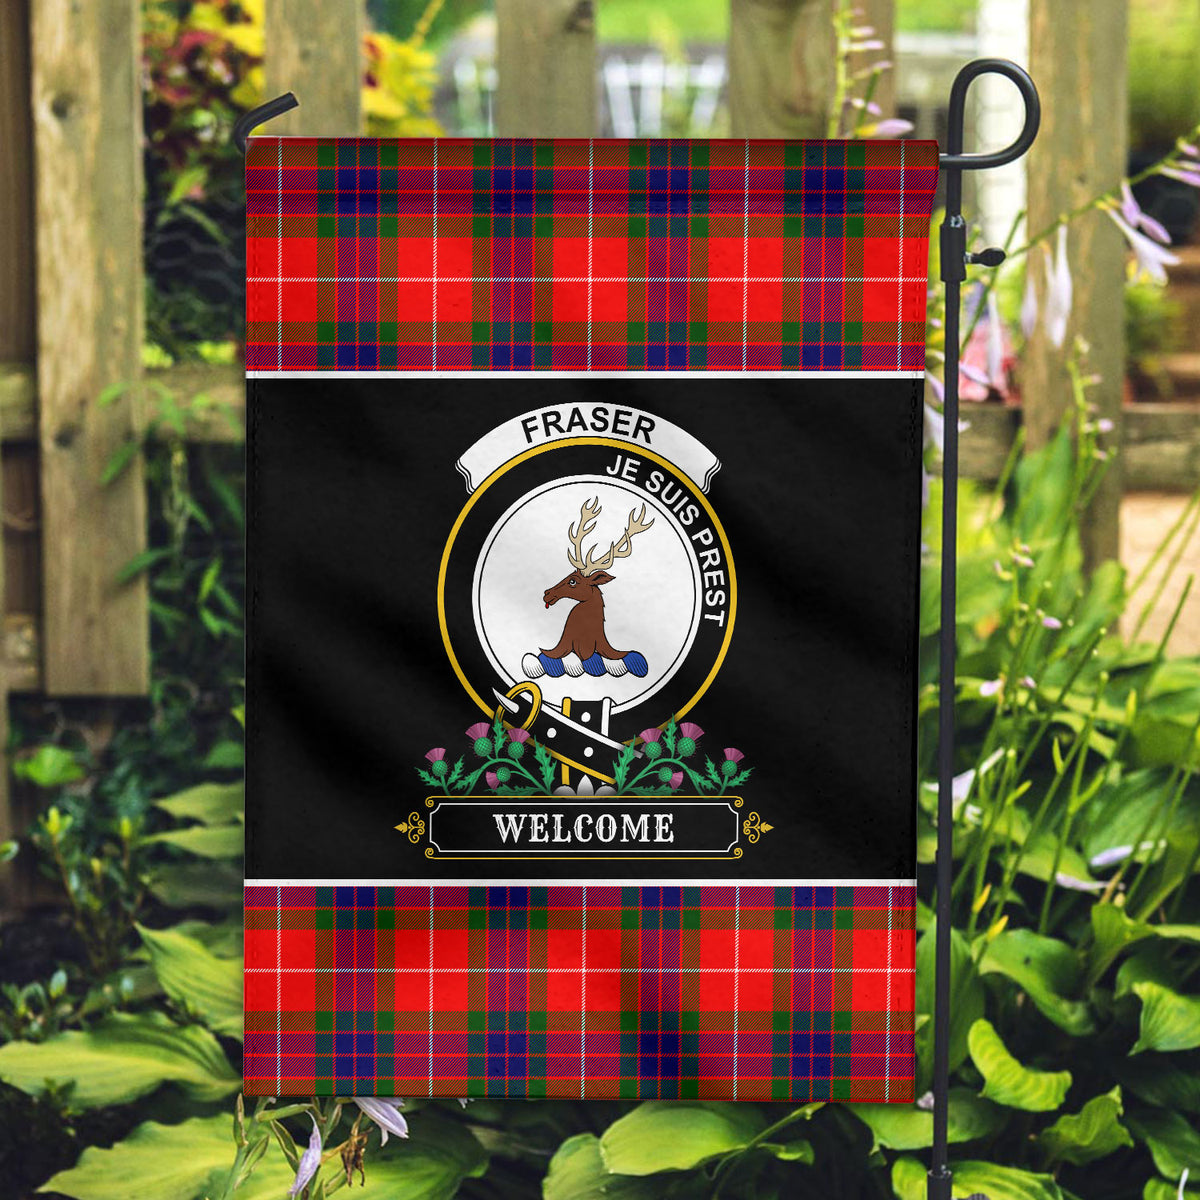 Fraser (of Lovat) Modern Tartan Crest Garden Flag - Welcome Style